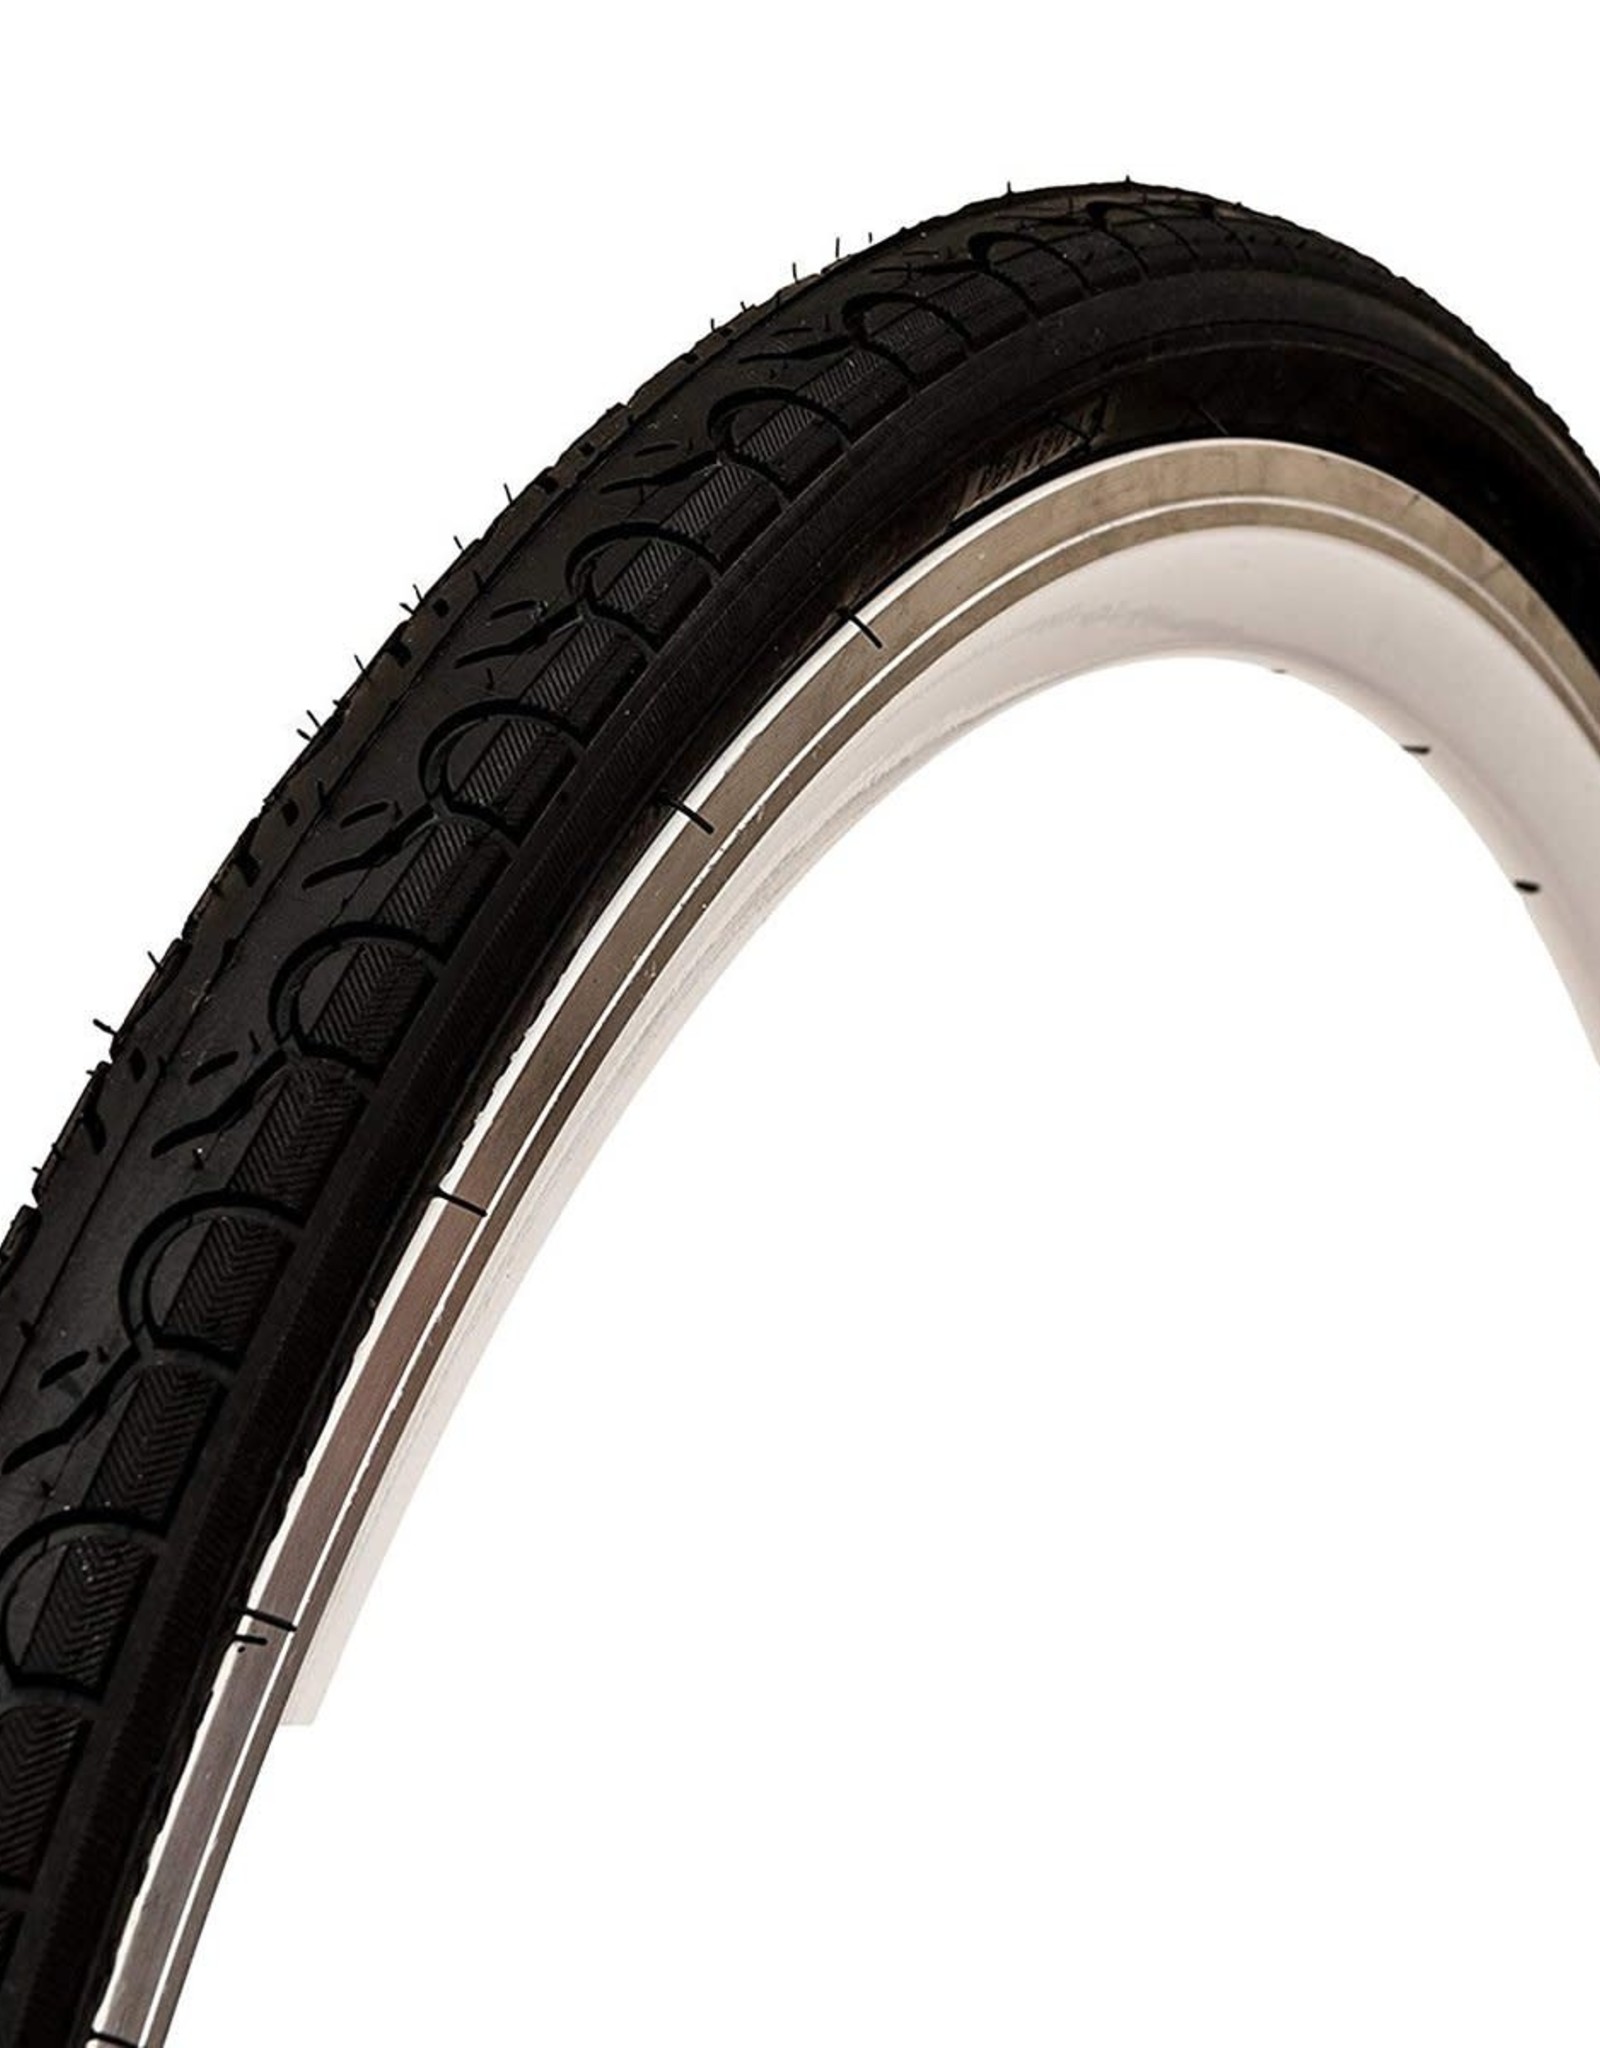 Kenda Kwest 700X35 white wall tires